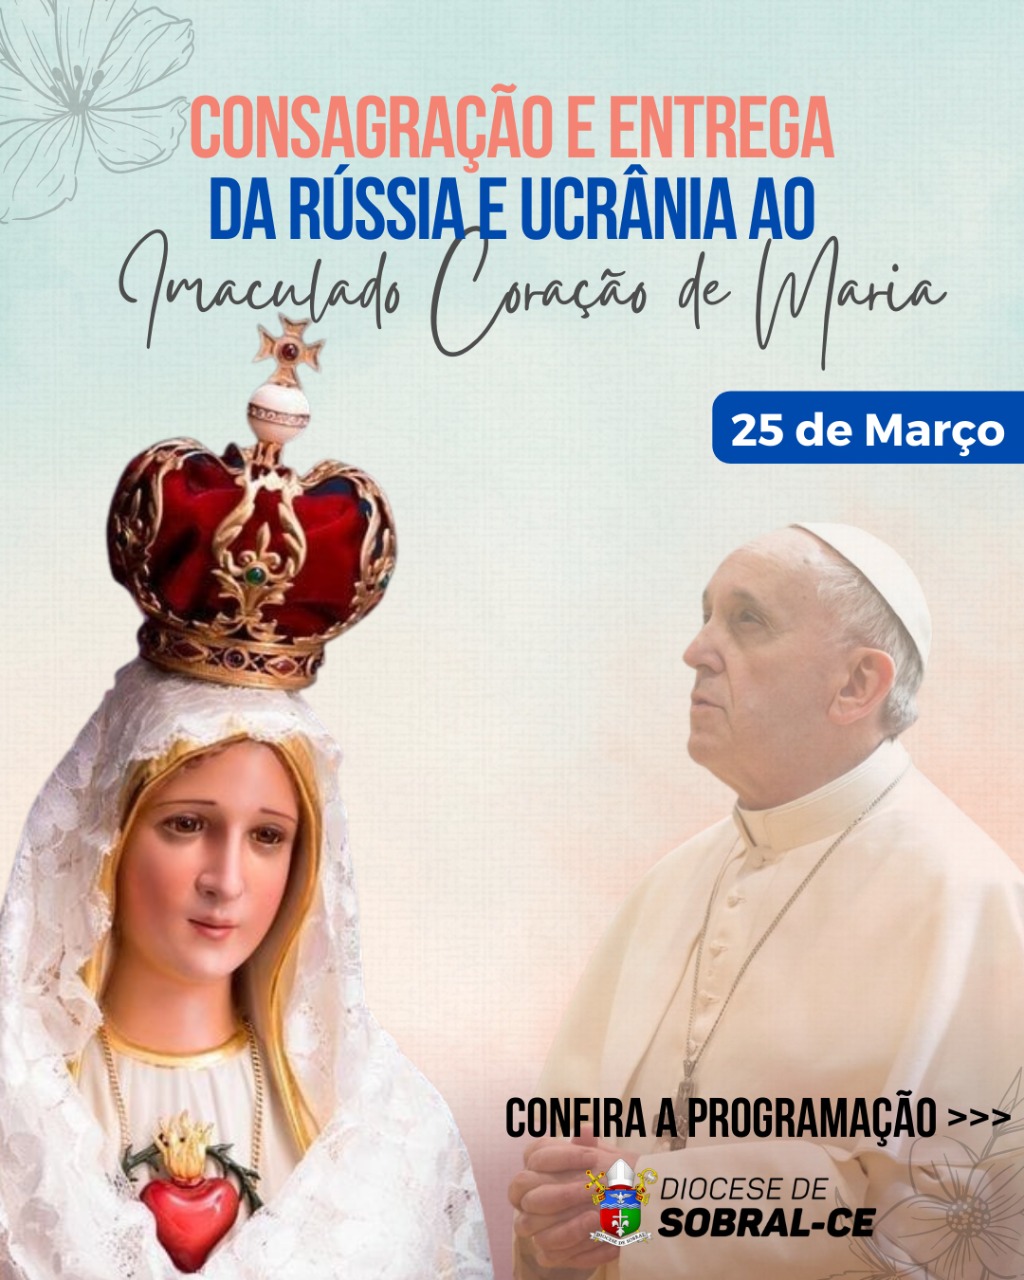 Consagração da Rússia e Ucrânia ao Imaculado Coração de Maria. Créditos: Diocese de Sobral